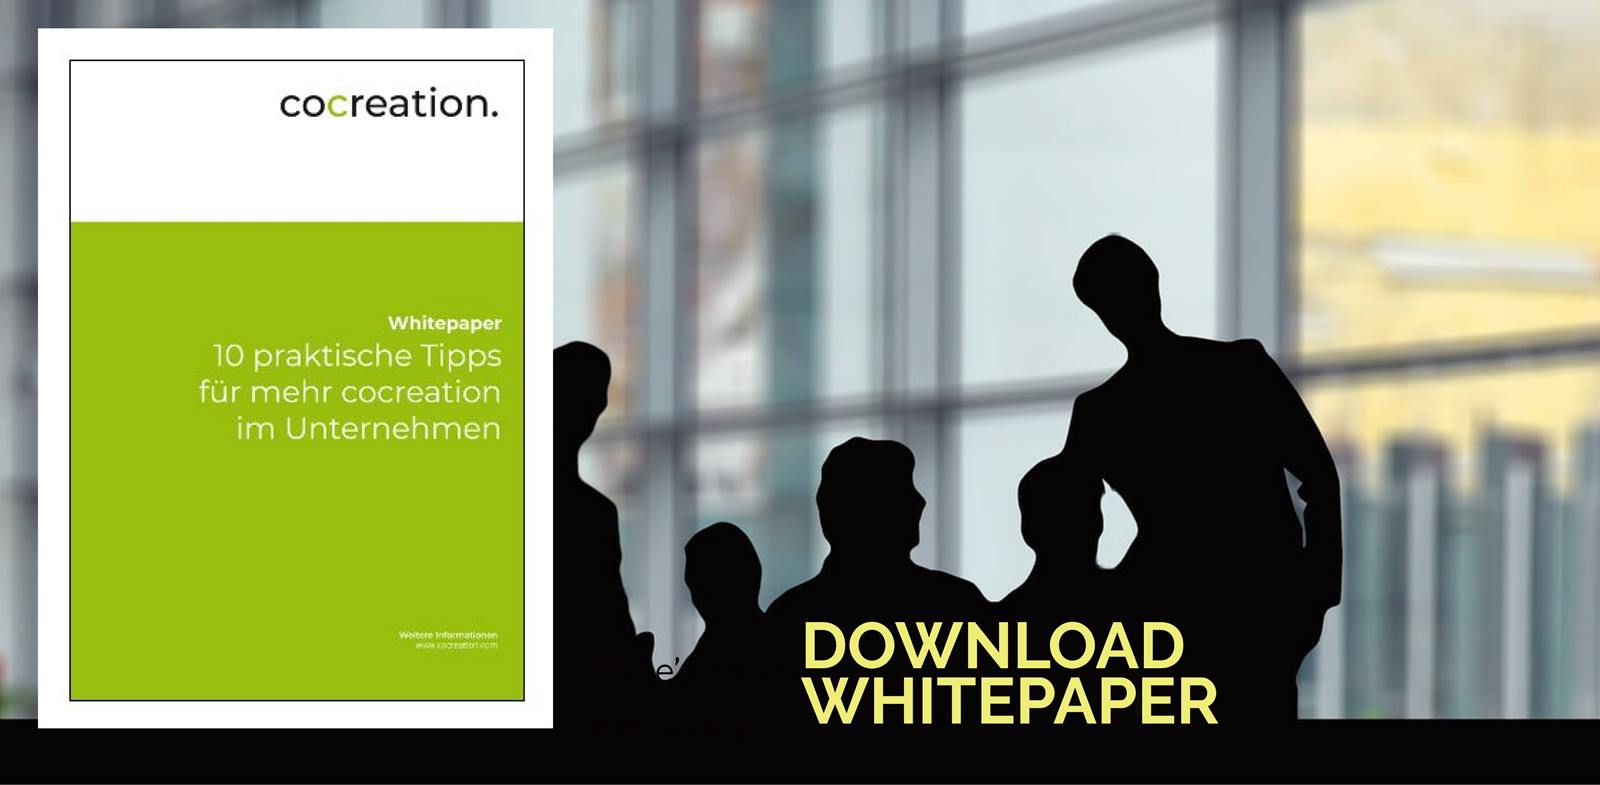 Cocreation Whitepaper: 10 praktische Tipps für mehr cocreation im Unternehmen